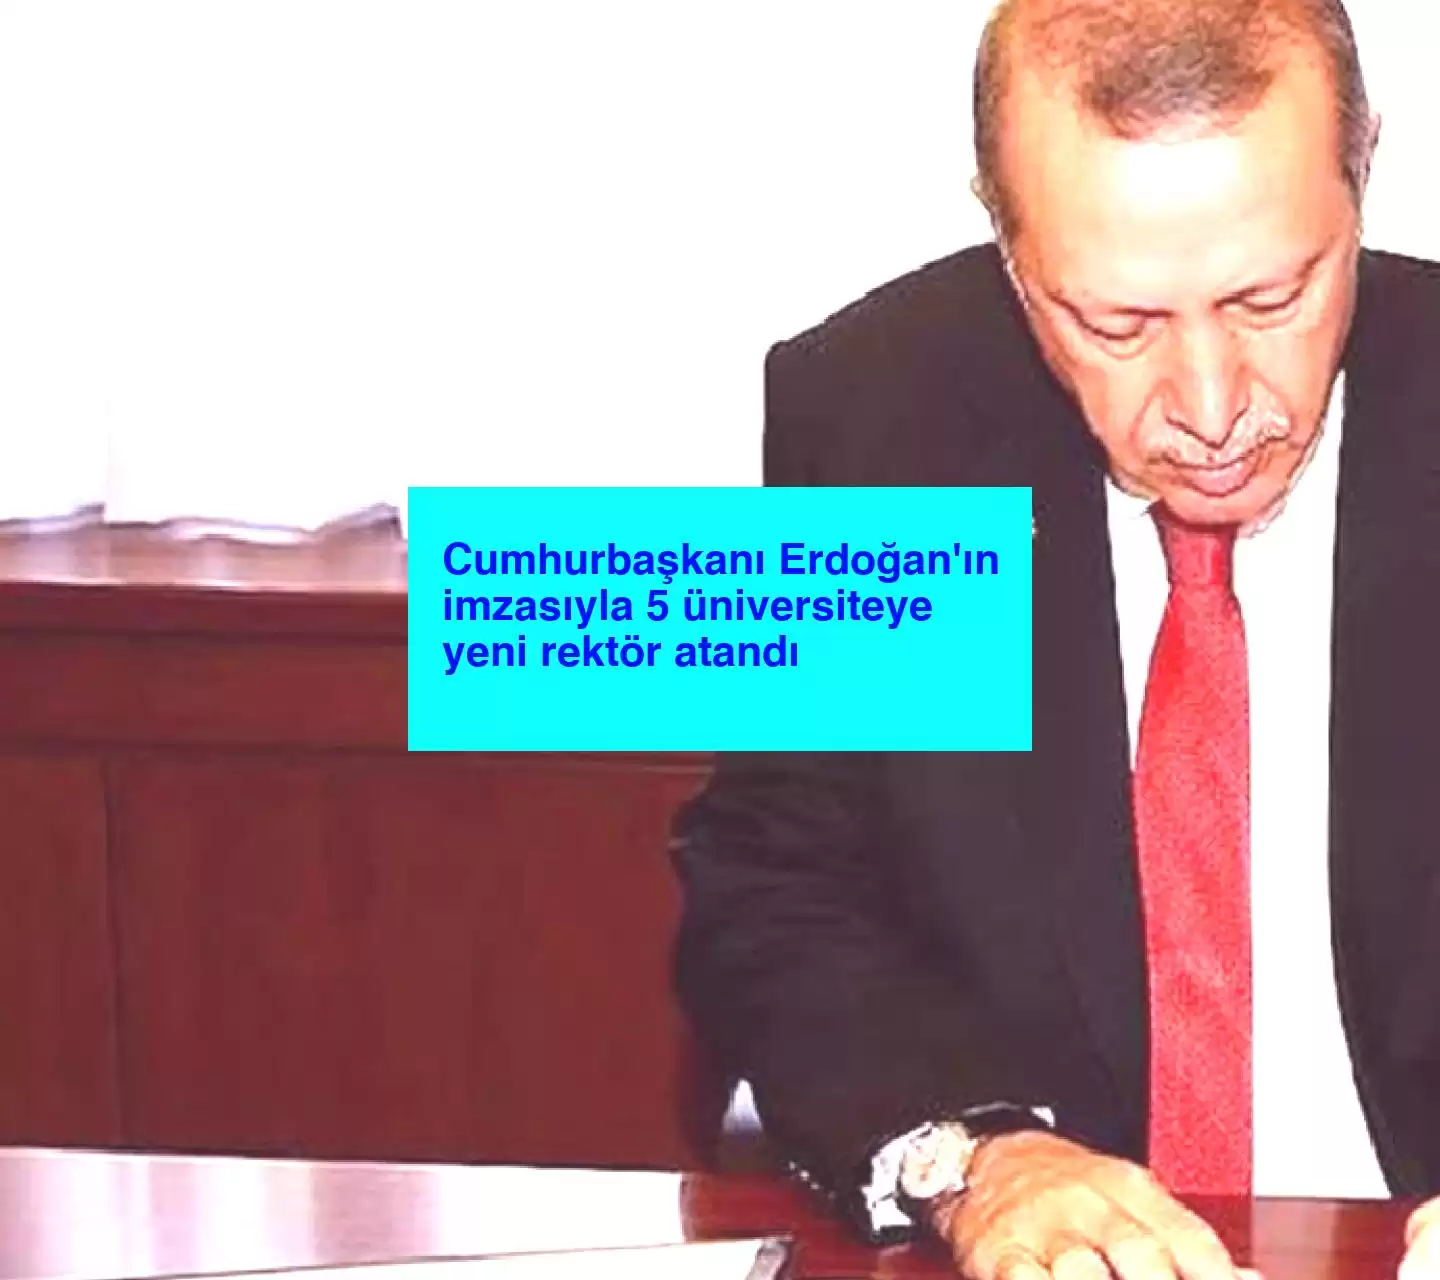 Cumhurbaşkanı Erdoğan’ın imzasıyla 5 üniversiteye yeni rektör atandı